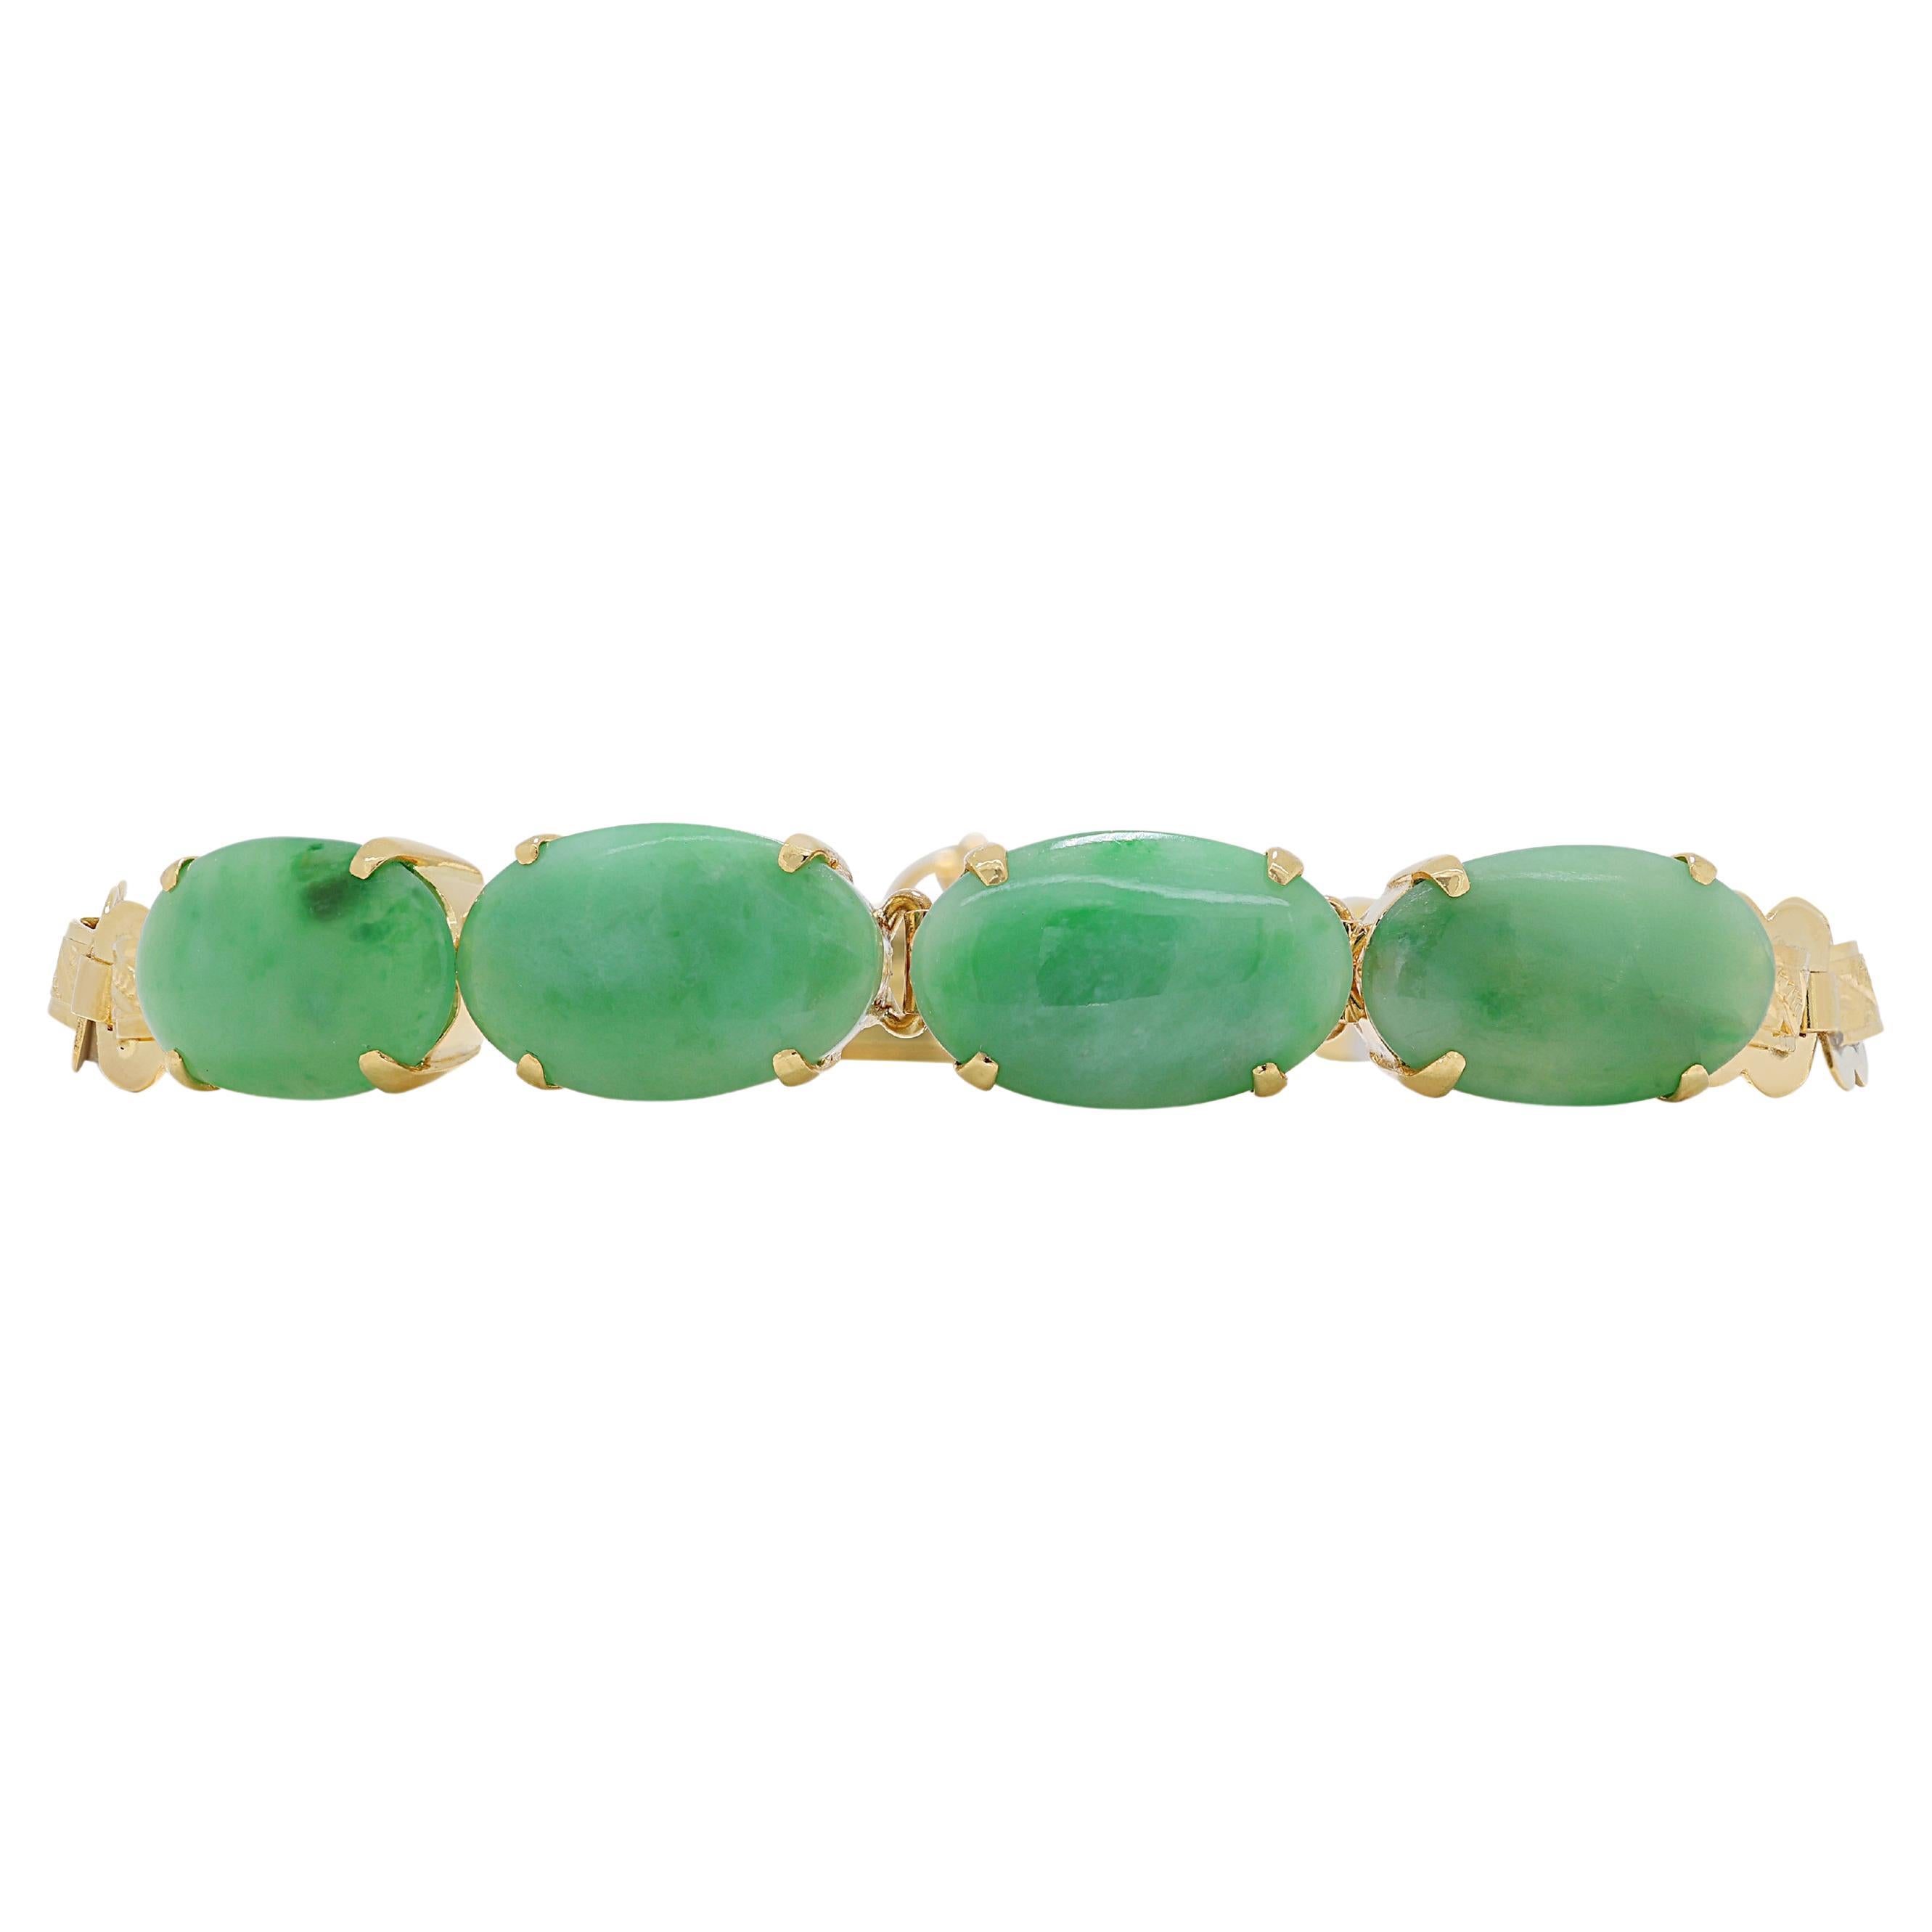 Magnifique bracelet cabochon de jade 19,17 carats en or jaune 22 carats